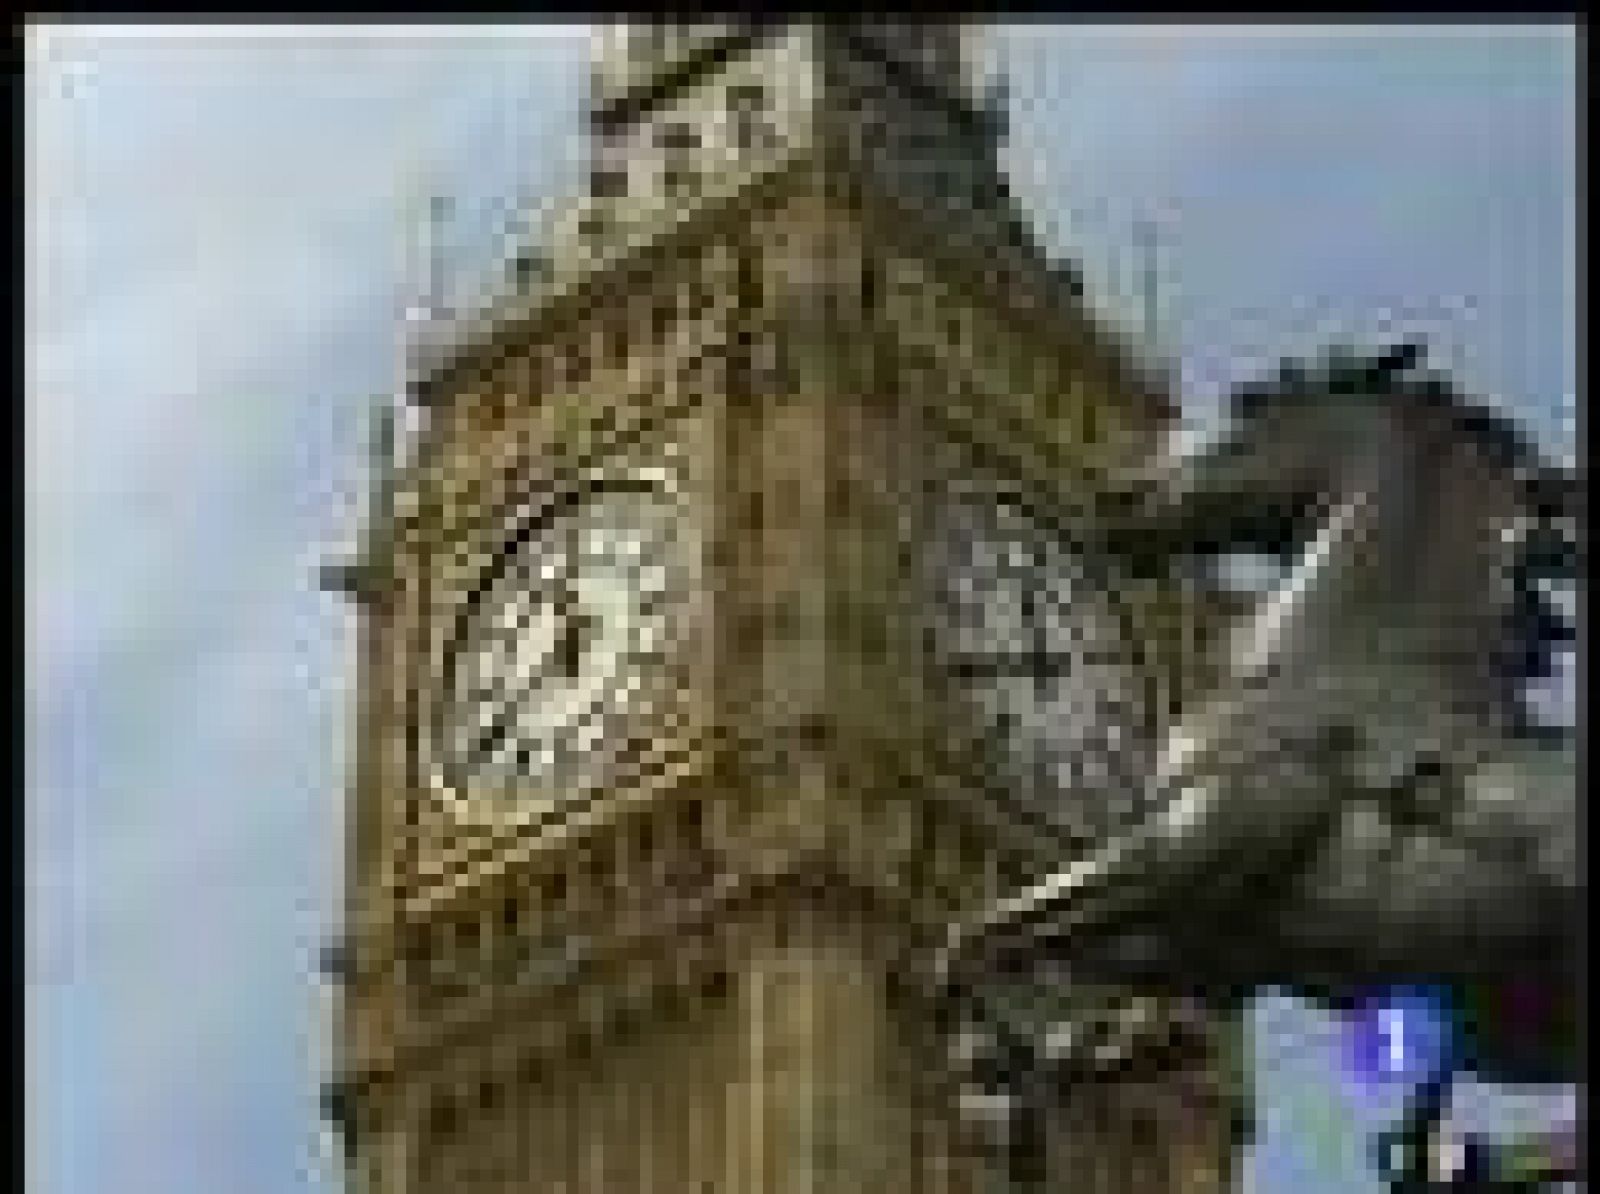 La campana que da nombre al "Big Ben", uno de los símbolos más conocidos de Londres, cumple 150 años de vida. 